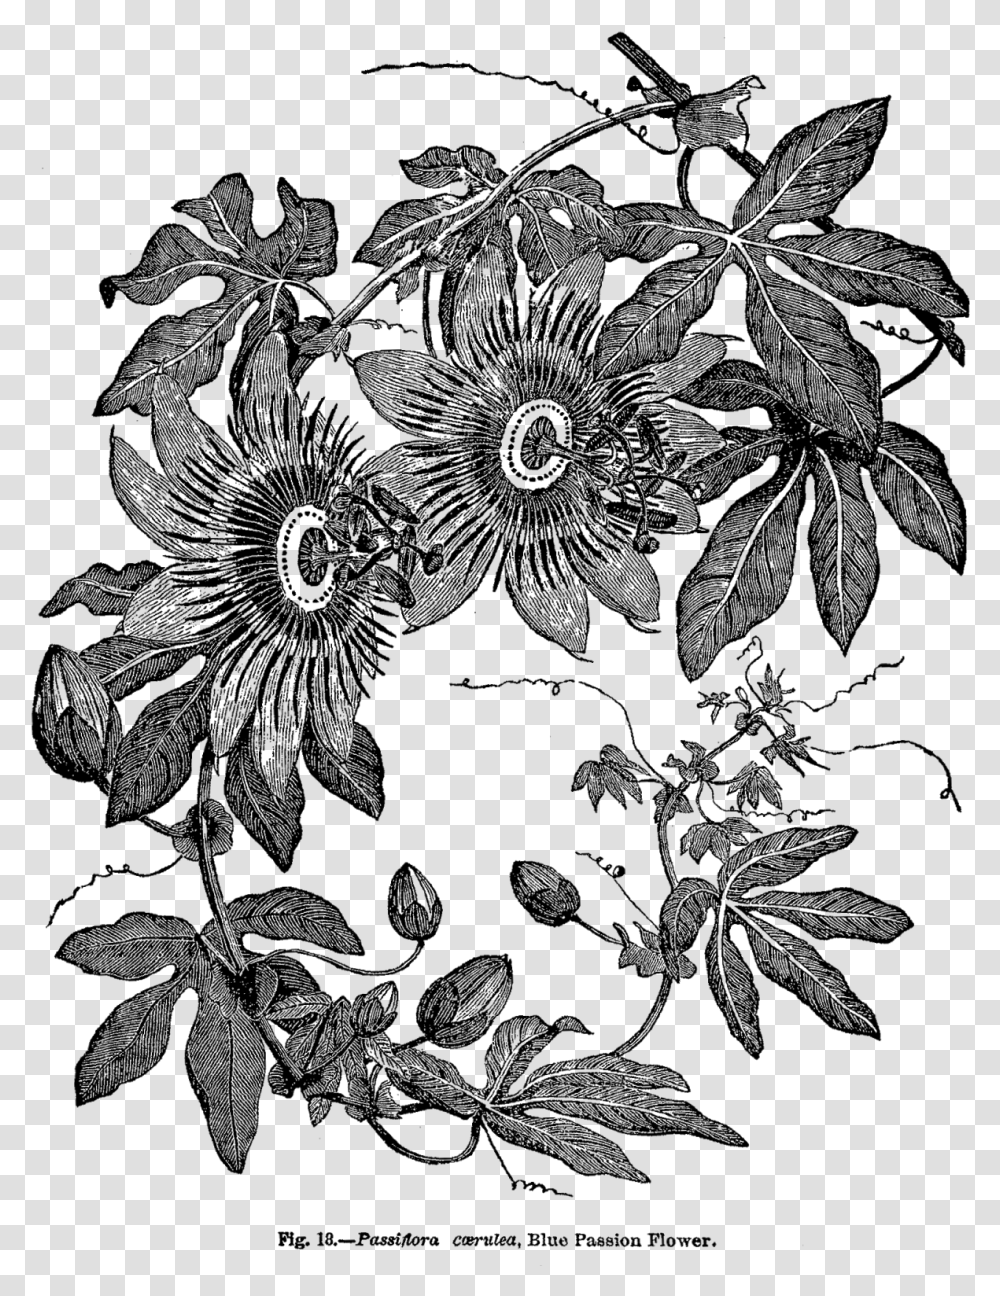 Passion Flower Botanical Print Black And White, Plant, Leaf, Pattern, Floral Design Transparent Png